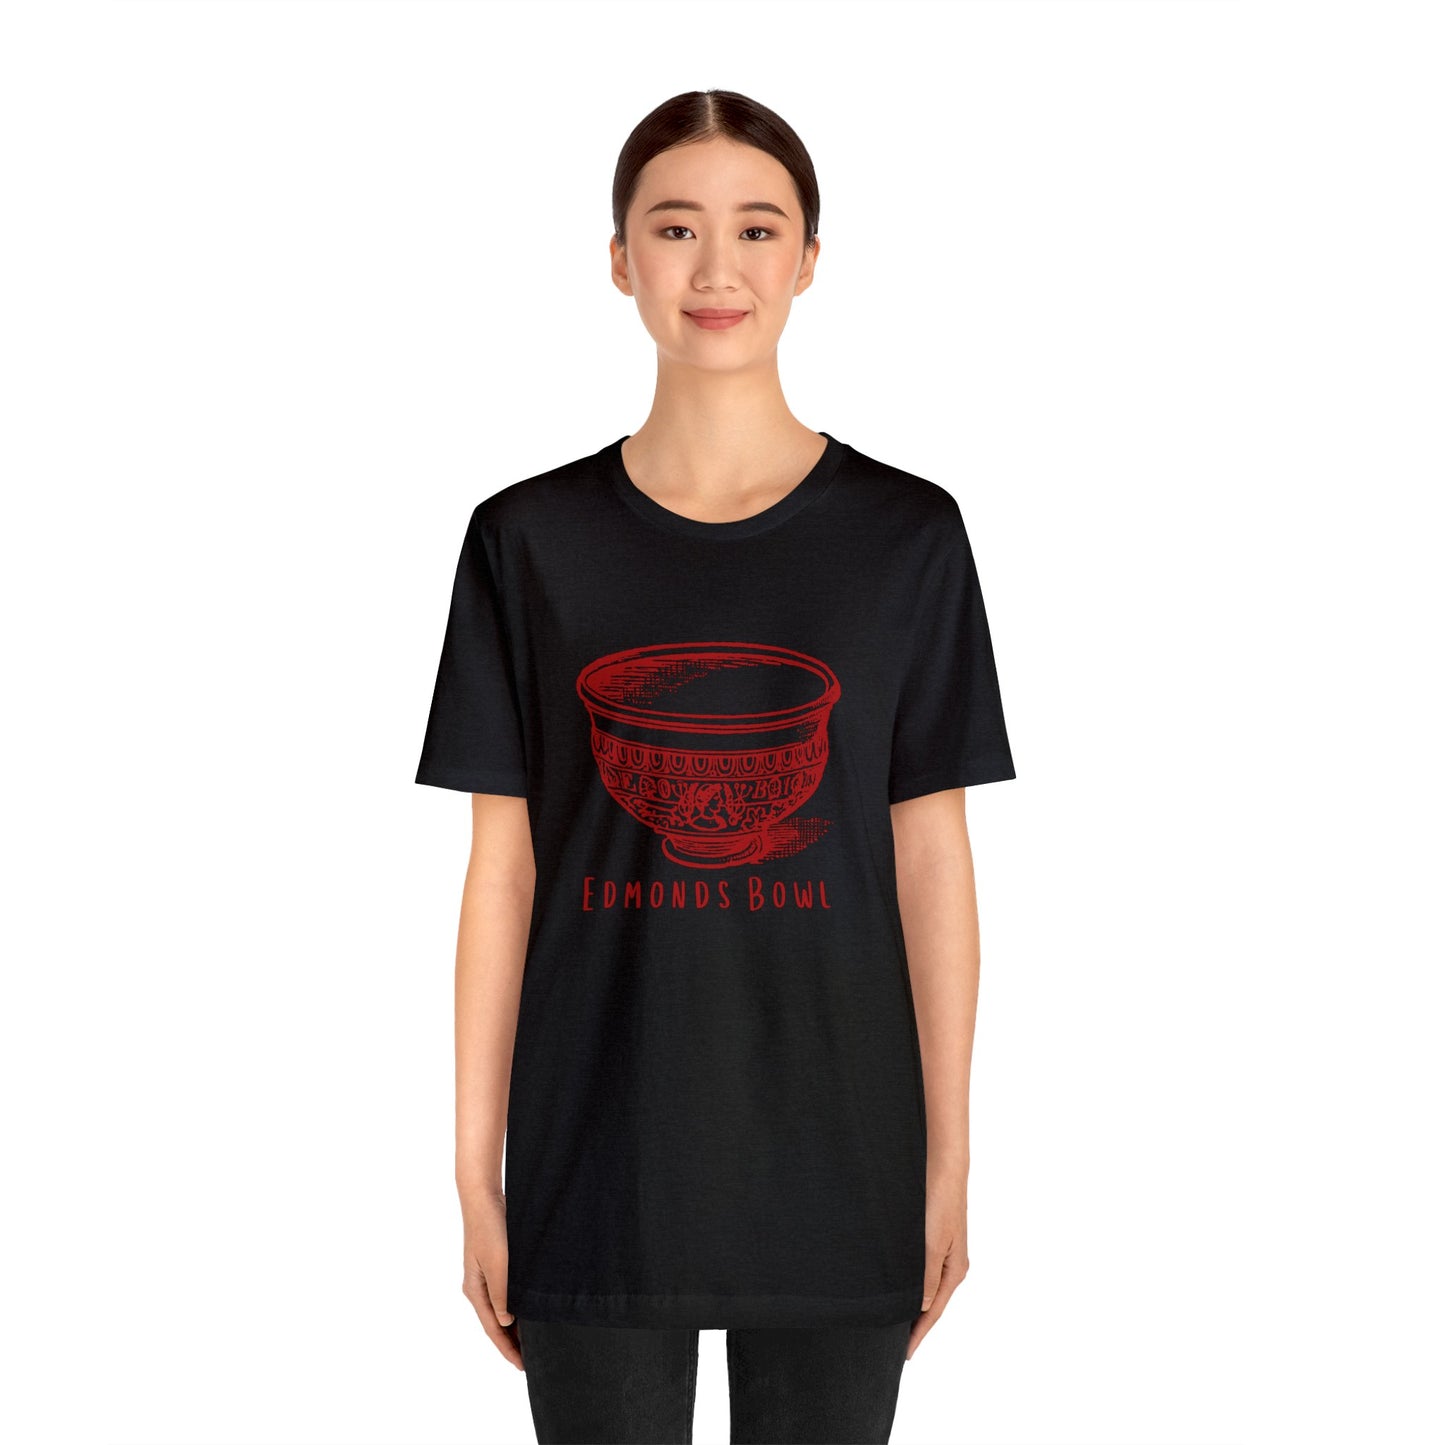 Edmonds Bowl T-shirt